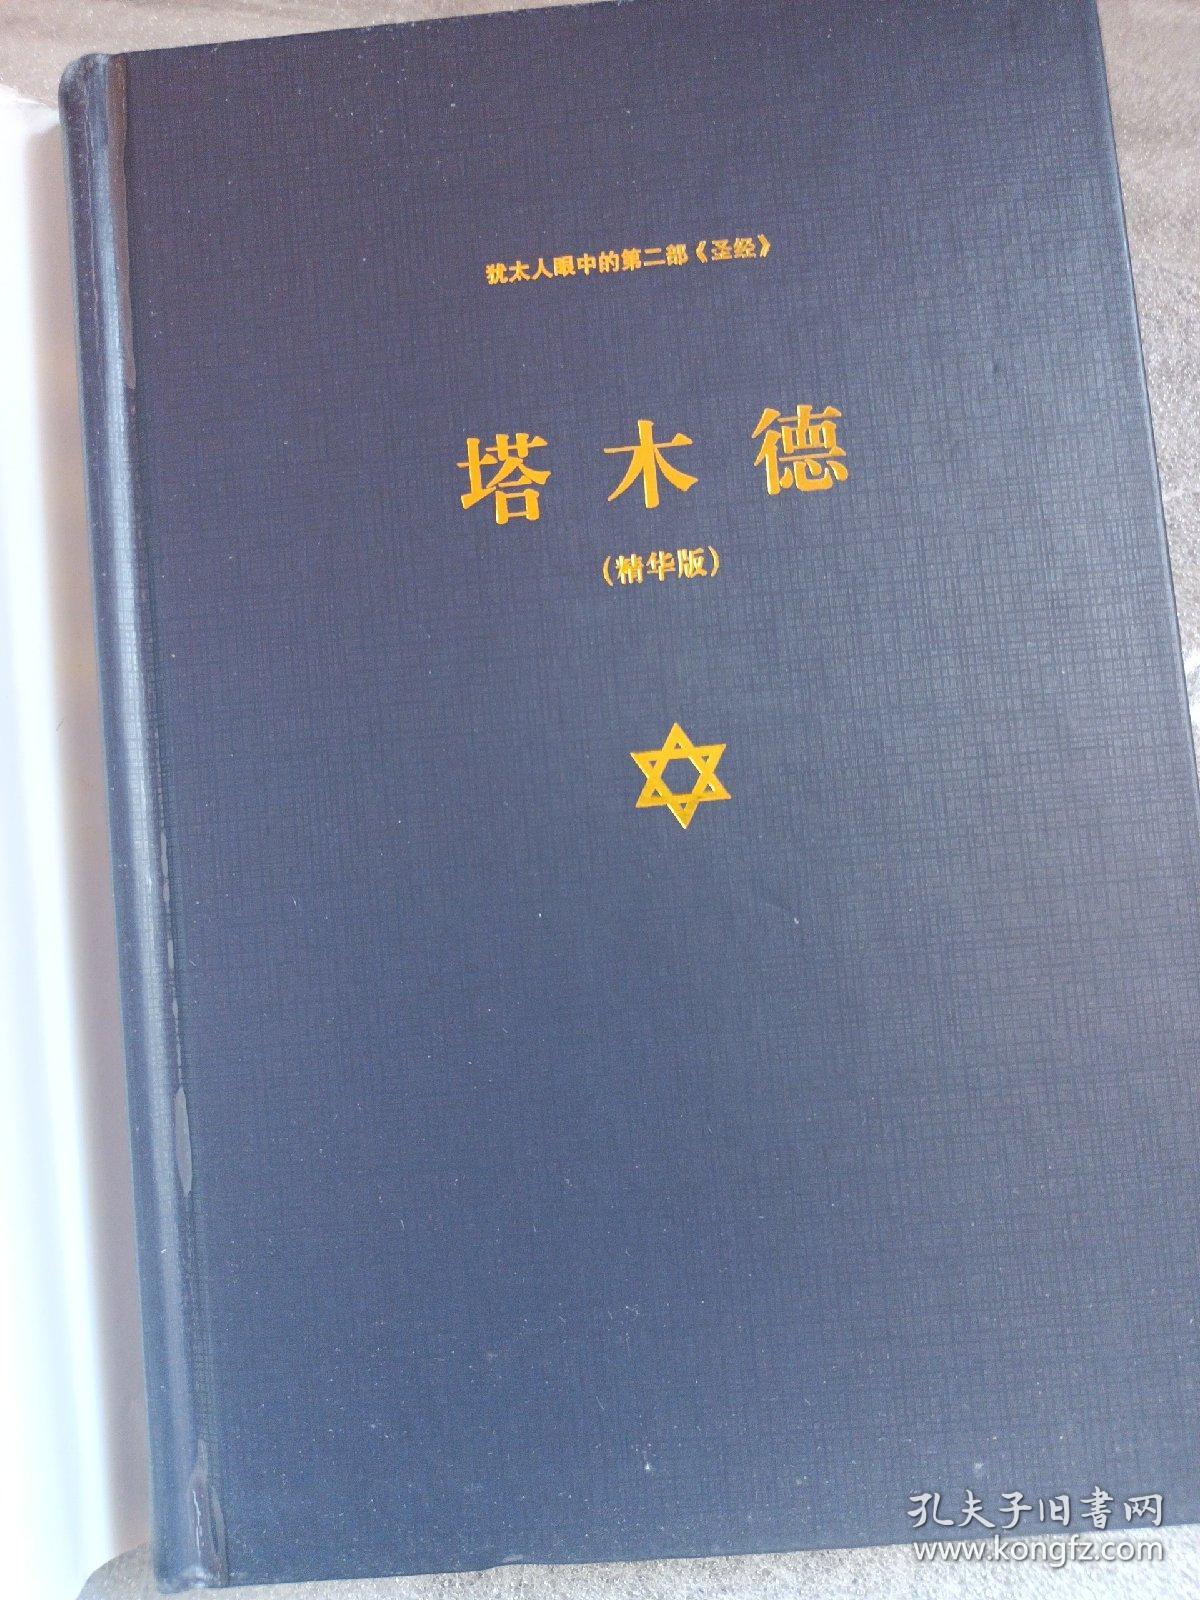 犹太人眼中的第二部 圣经：塔木德（精华版）上海三联书店 一版多印精装一厚本 贺雄飞出品